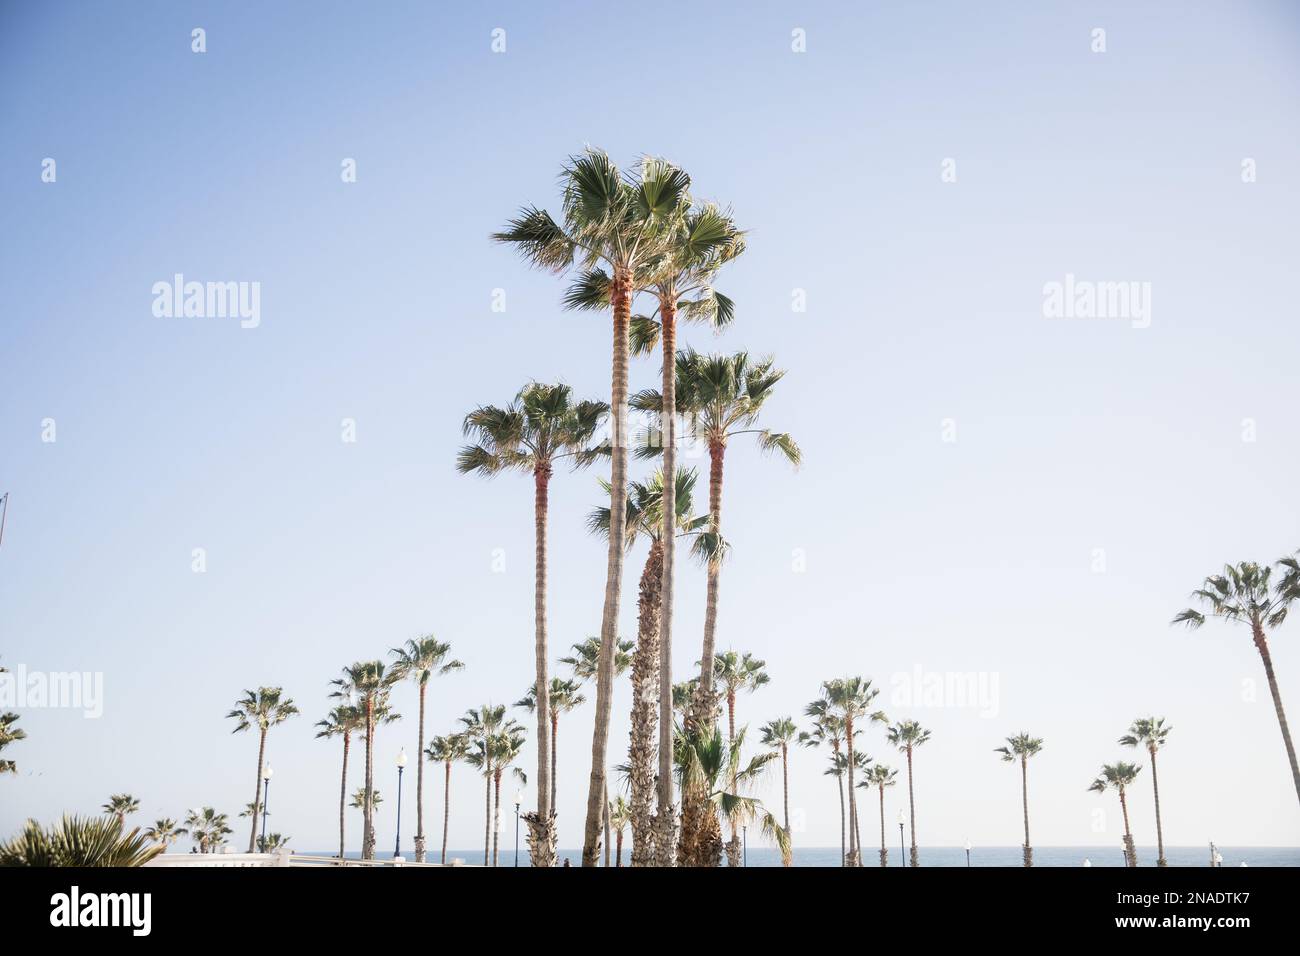 Palmiers dans un paysage de plage symétrique Banque D'Images